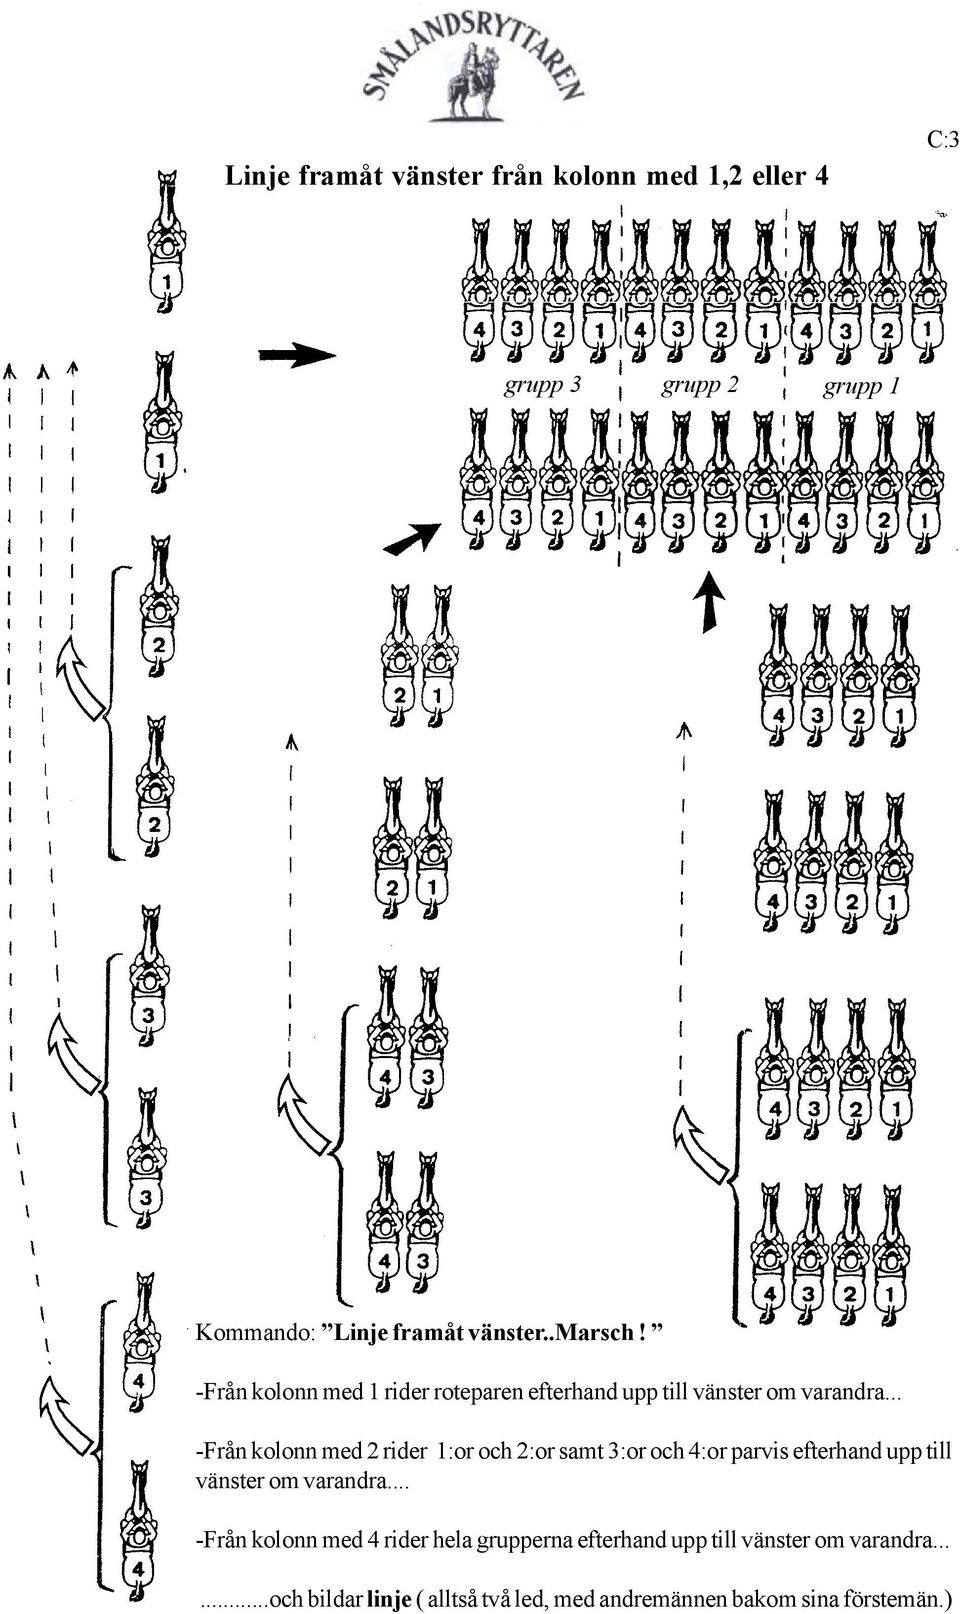 .. -Från kolonn med 2 rider 1:or och 2:or samt 3:or och 4:or parvis efterhand upp till vänster om varandra.